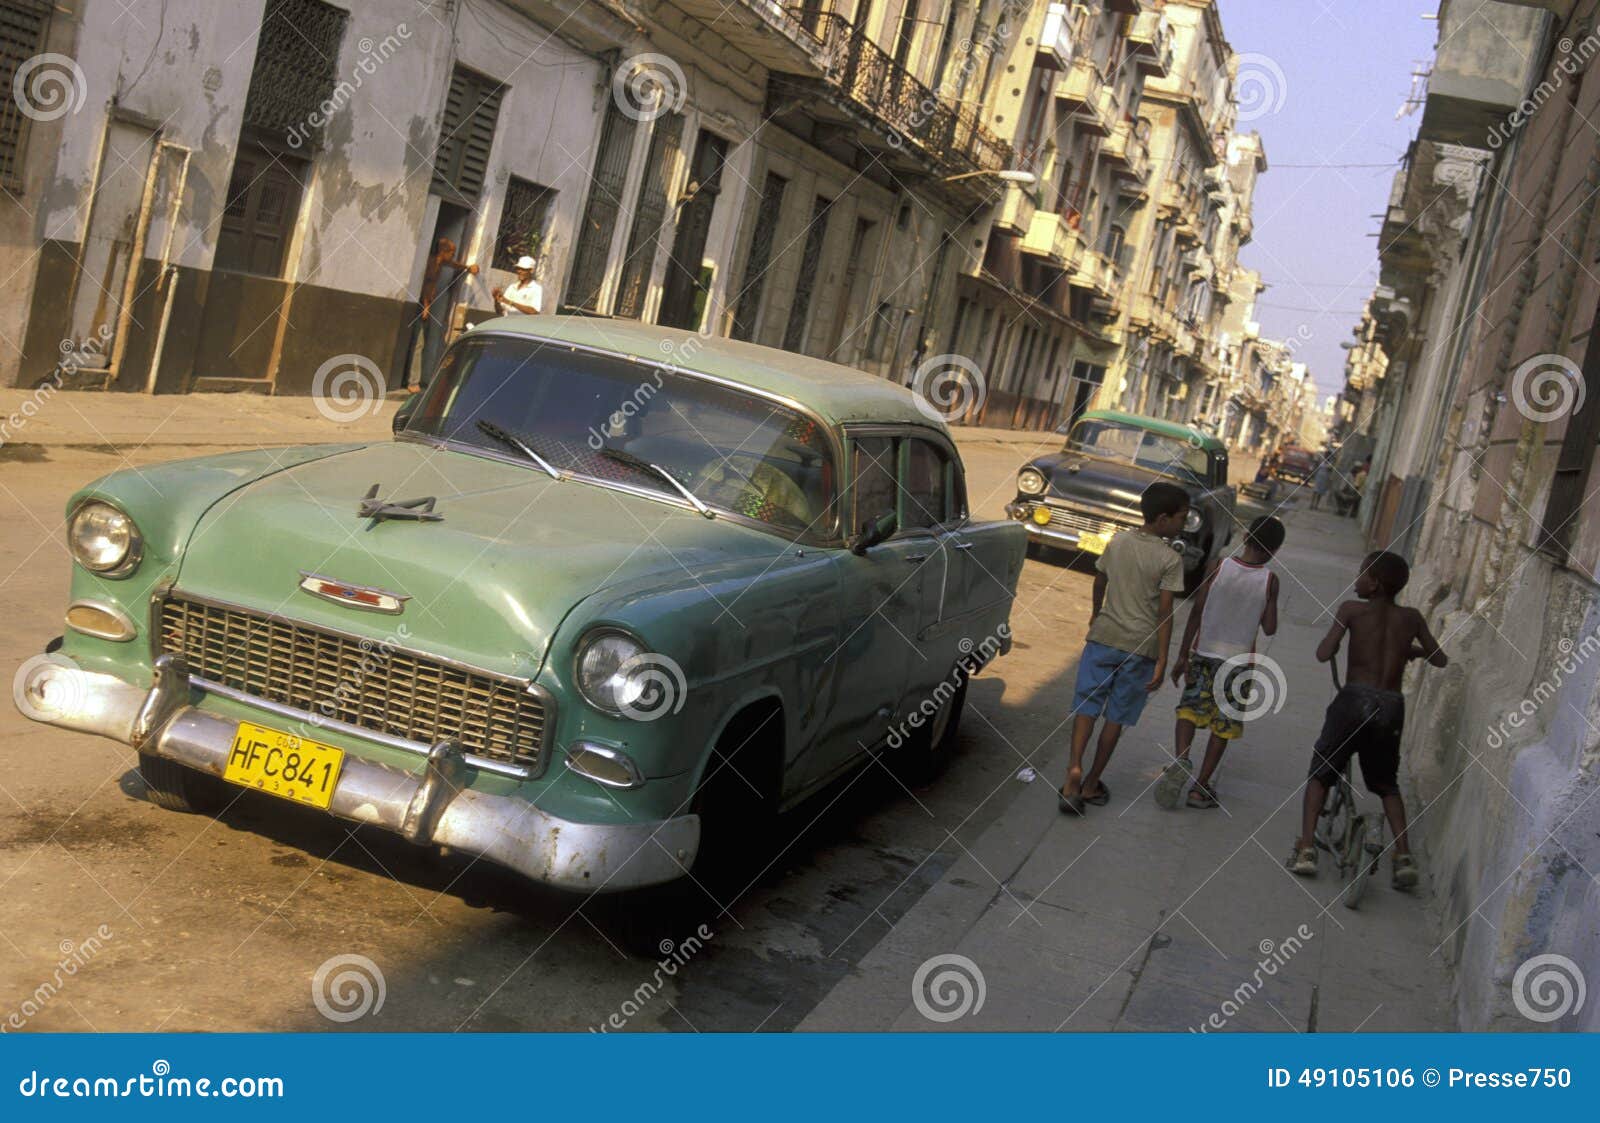 AMÉRICA CUBA HAVANA. Carros velhos no townl velho da cidade de Havana em Cuba no mar das caraíbas